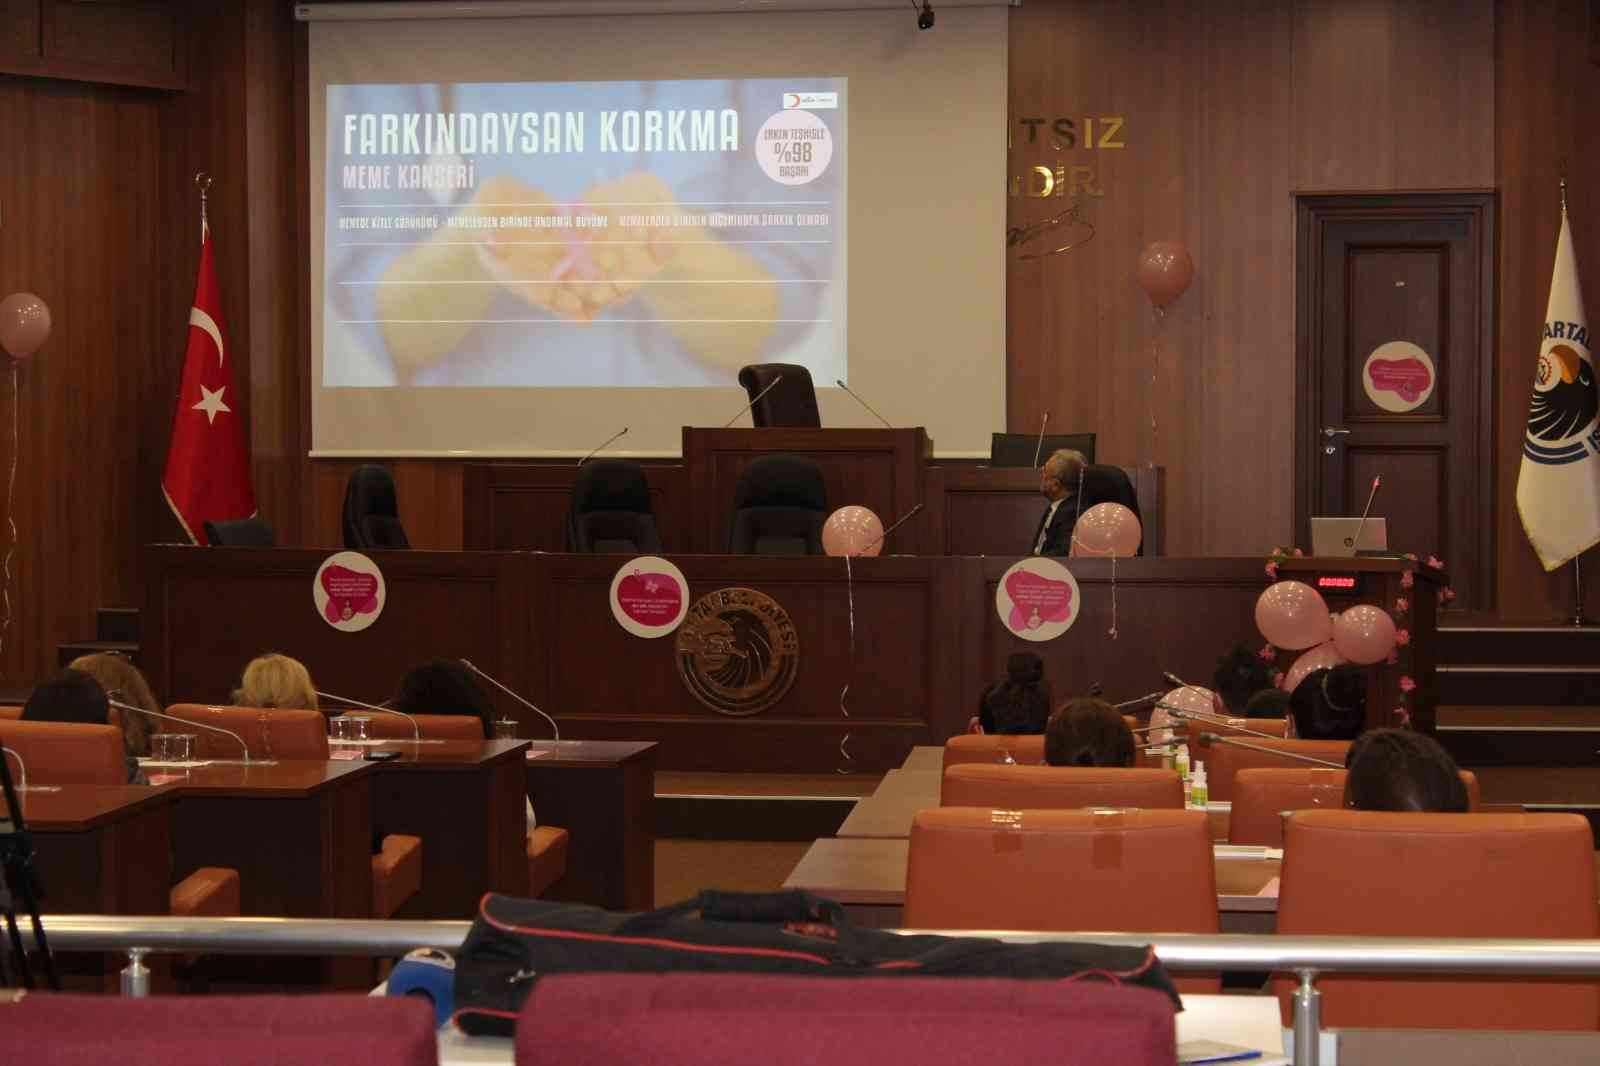 Kartal’da meme kanseri farkındalığı için seminer düzenlendi #istanbul